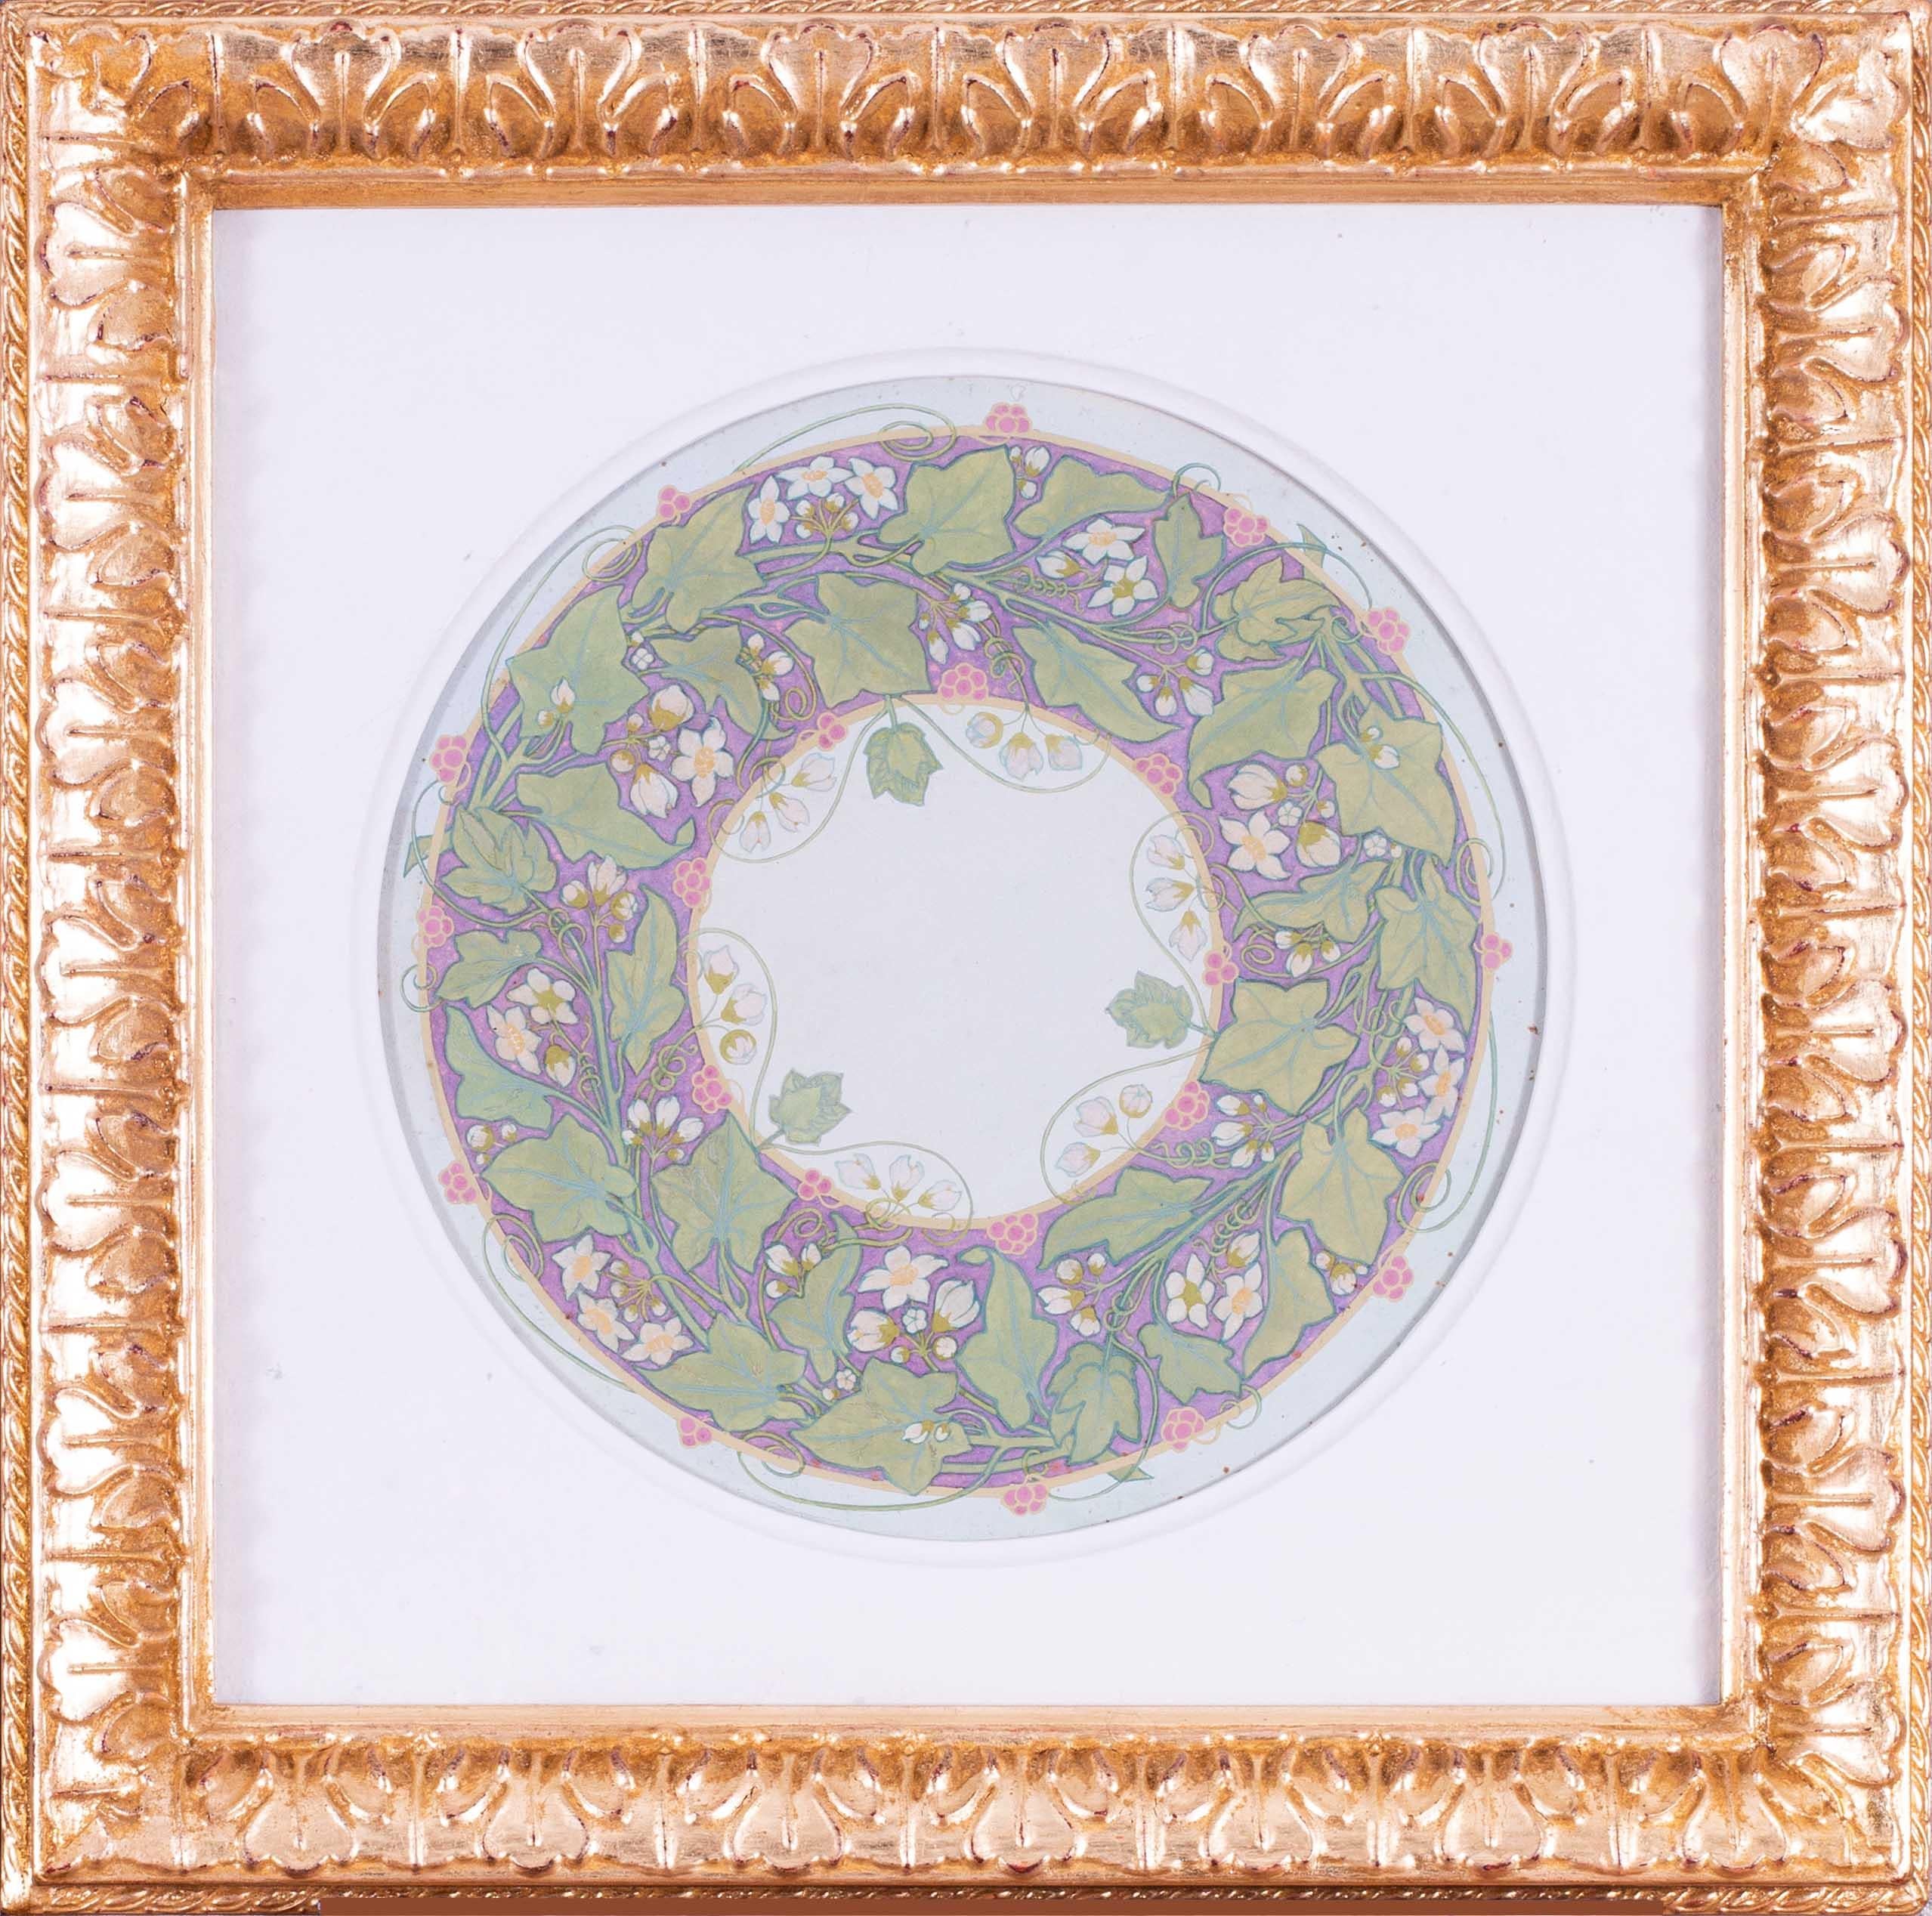 Edward Ridley (britannique, 1883-1946)
Un motif circulaire représentant du lierre en fleurs
Gouache
9.7/8 in. (25 cm.) tondo
Ce dessin était l'un des cinq soumis pour le certificat ACT qui ont été récompensés par le prix national du livre en 1906.
